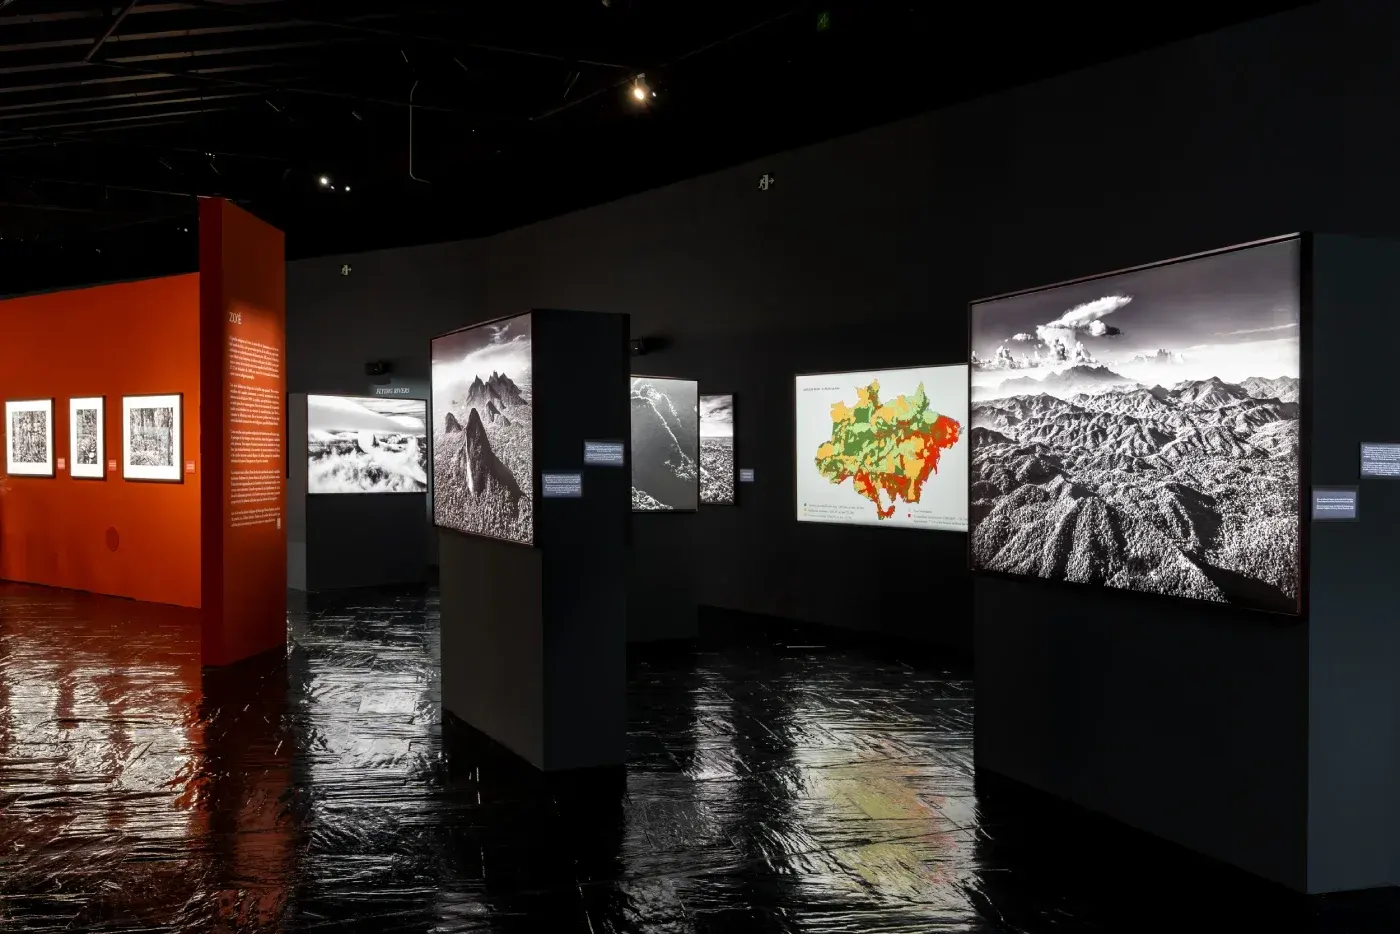  Exposición fotográfica Amazonia de Sebastião Salgado en Madrid